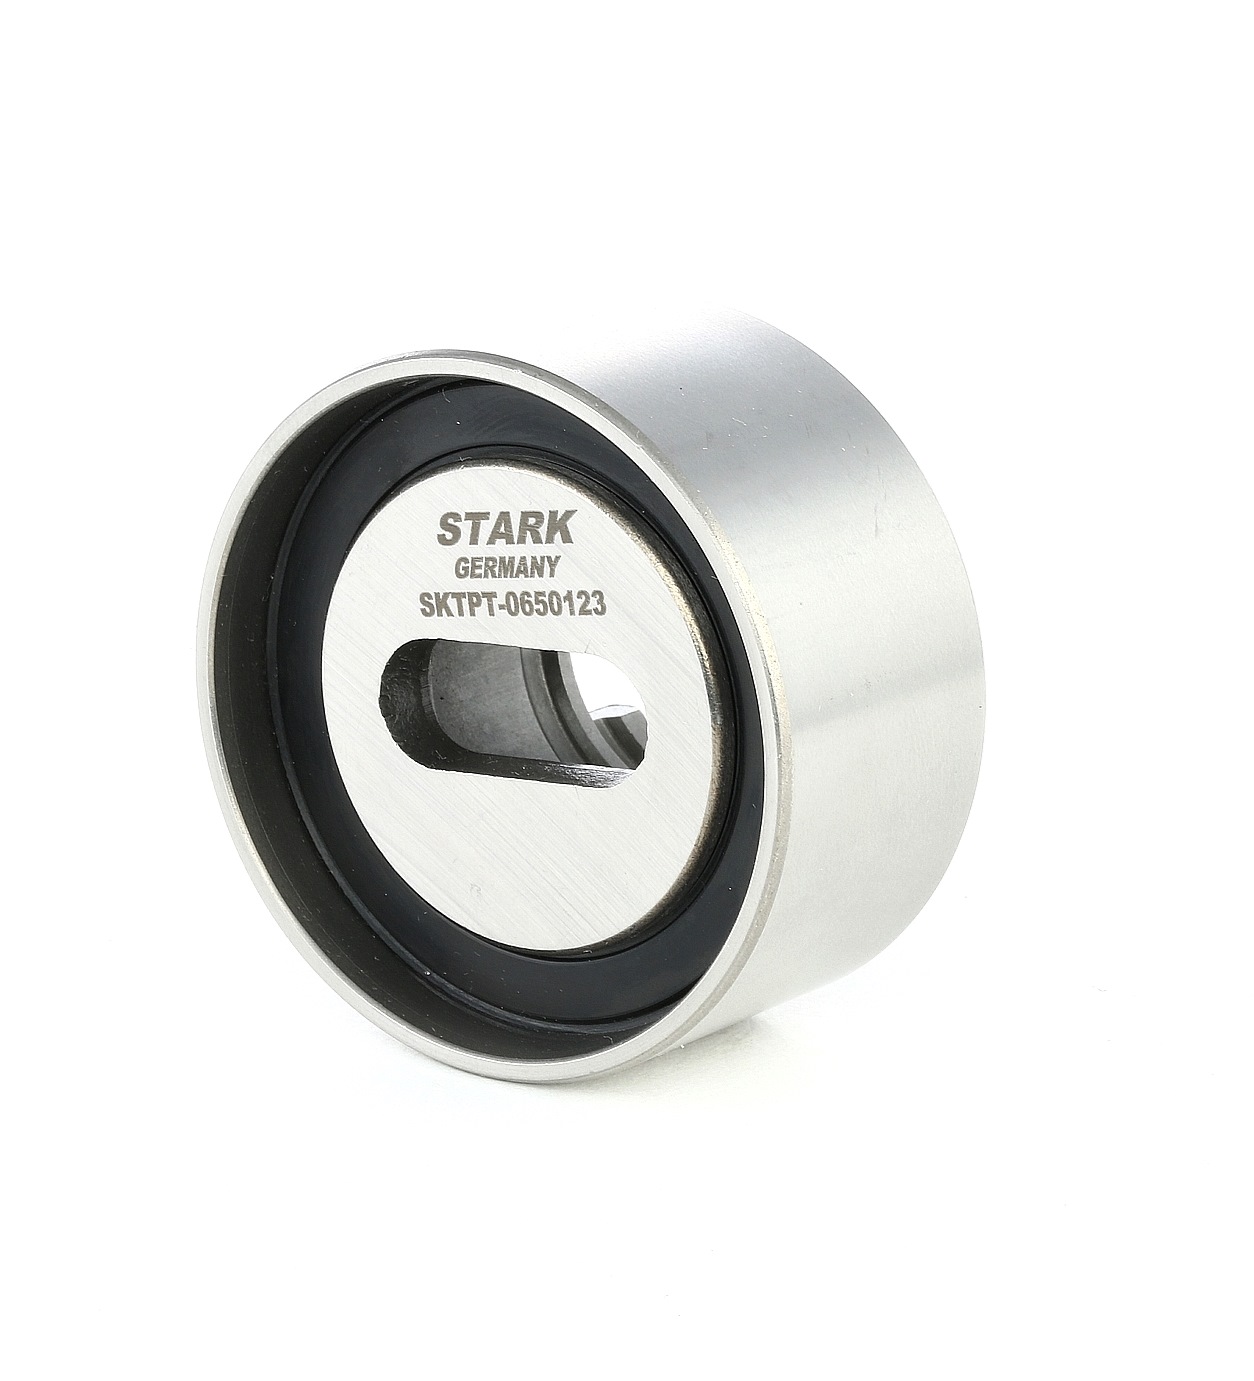 STARK SKTPT-0650123 Timing belt tensioner pulley B630 1270 0